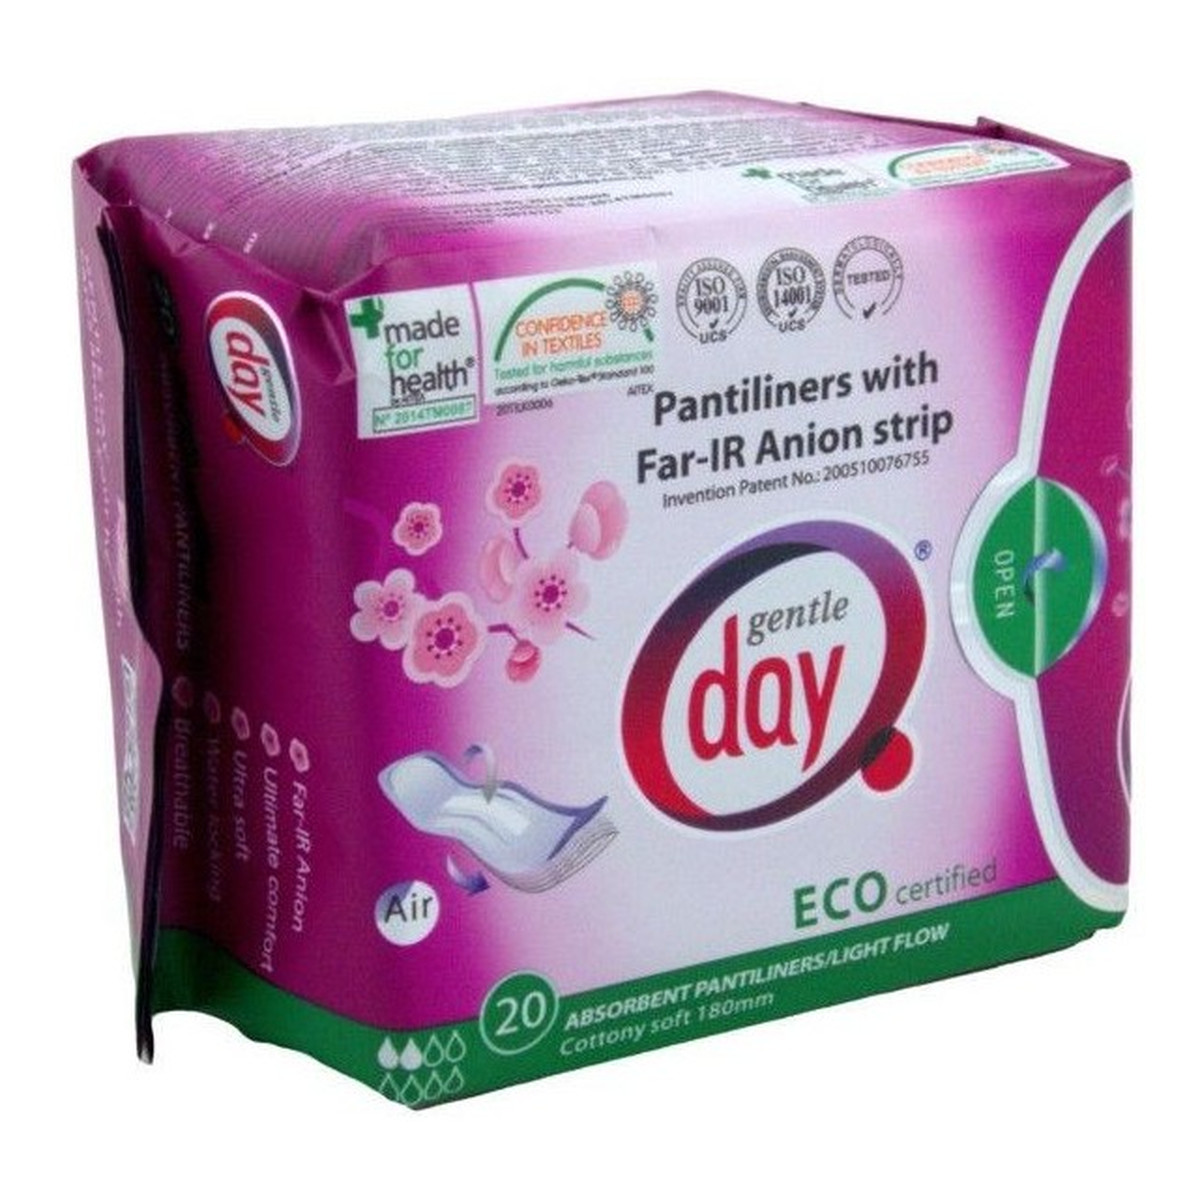 Gentle Day Pantiliners With Far-IR Anion Strip wkładki higieniczne z paskiem anionowym pochłaniające wilgoć eco 20szt